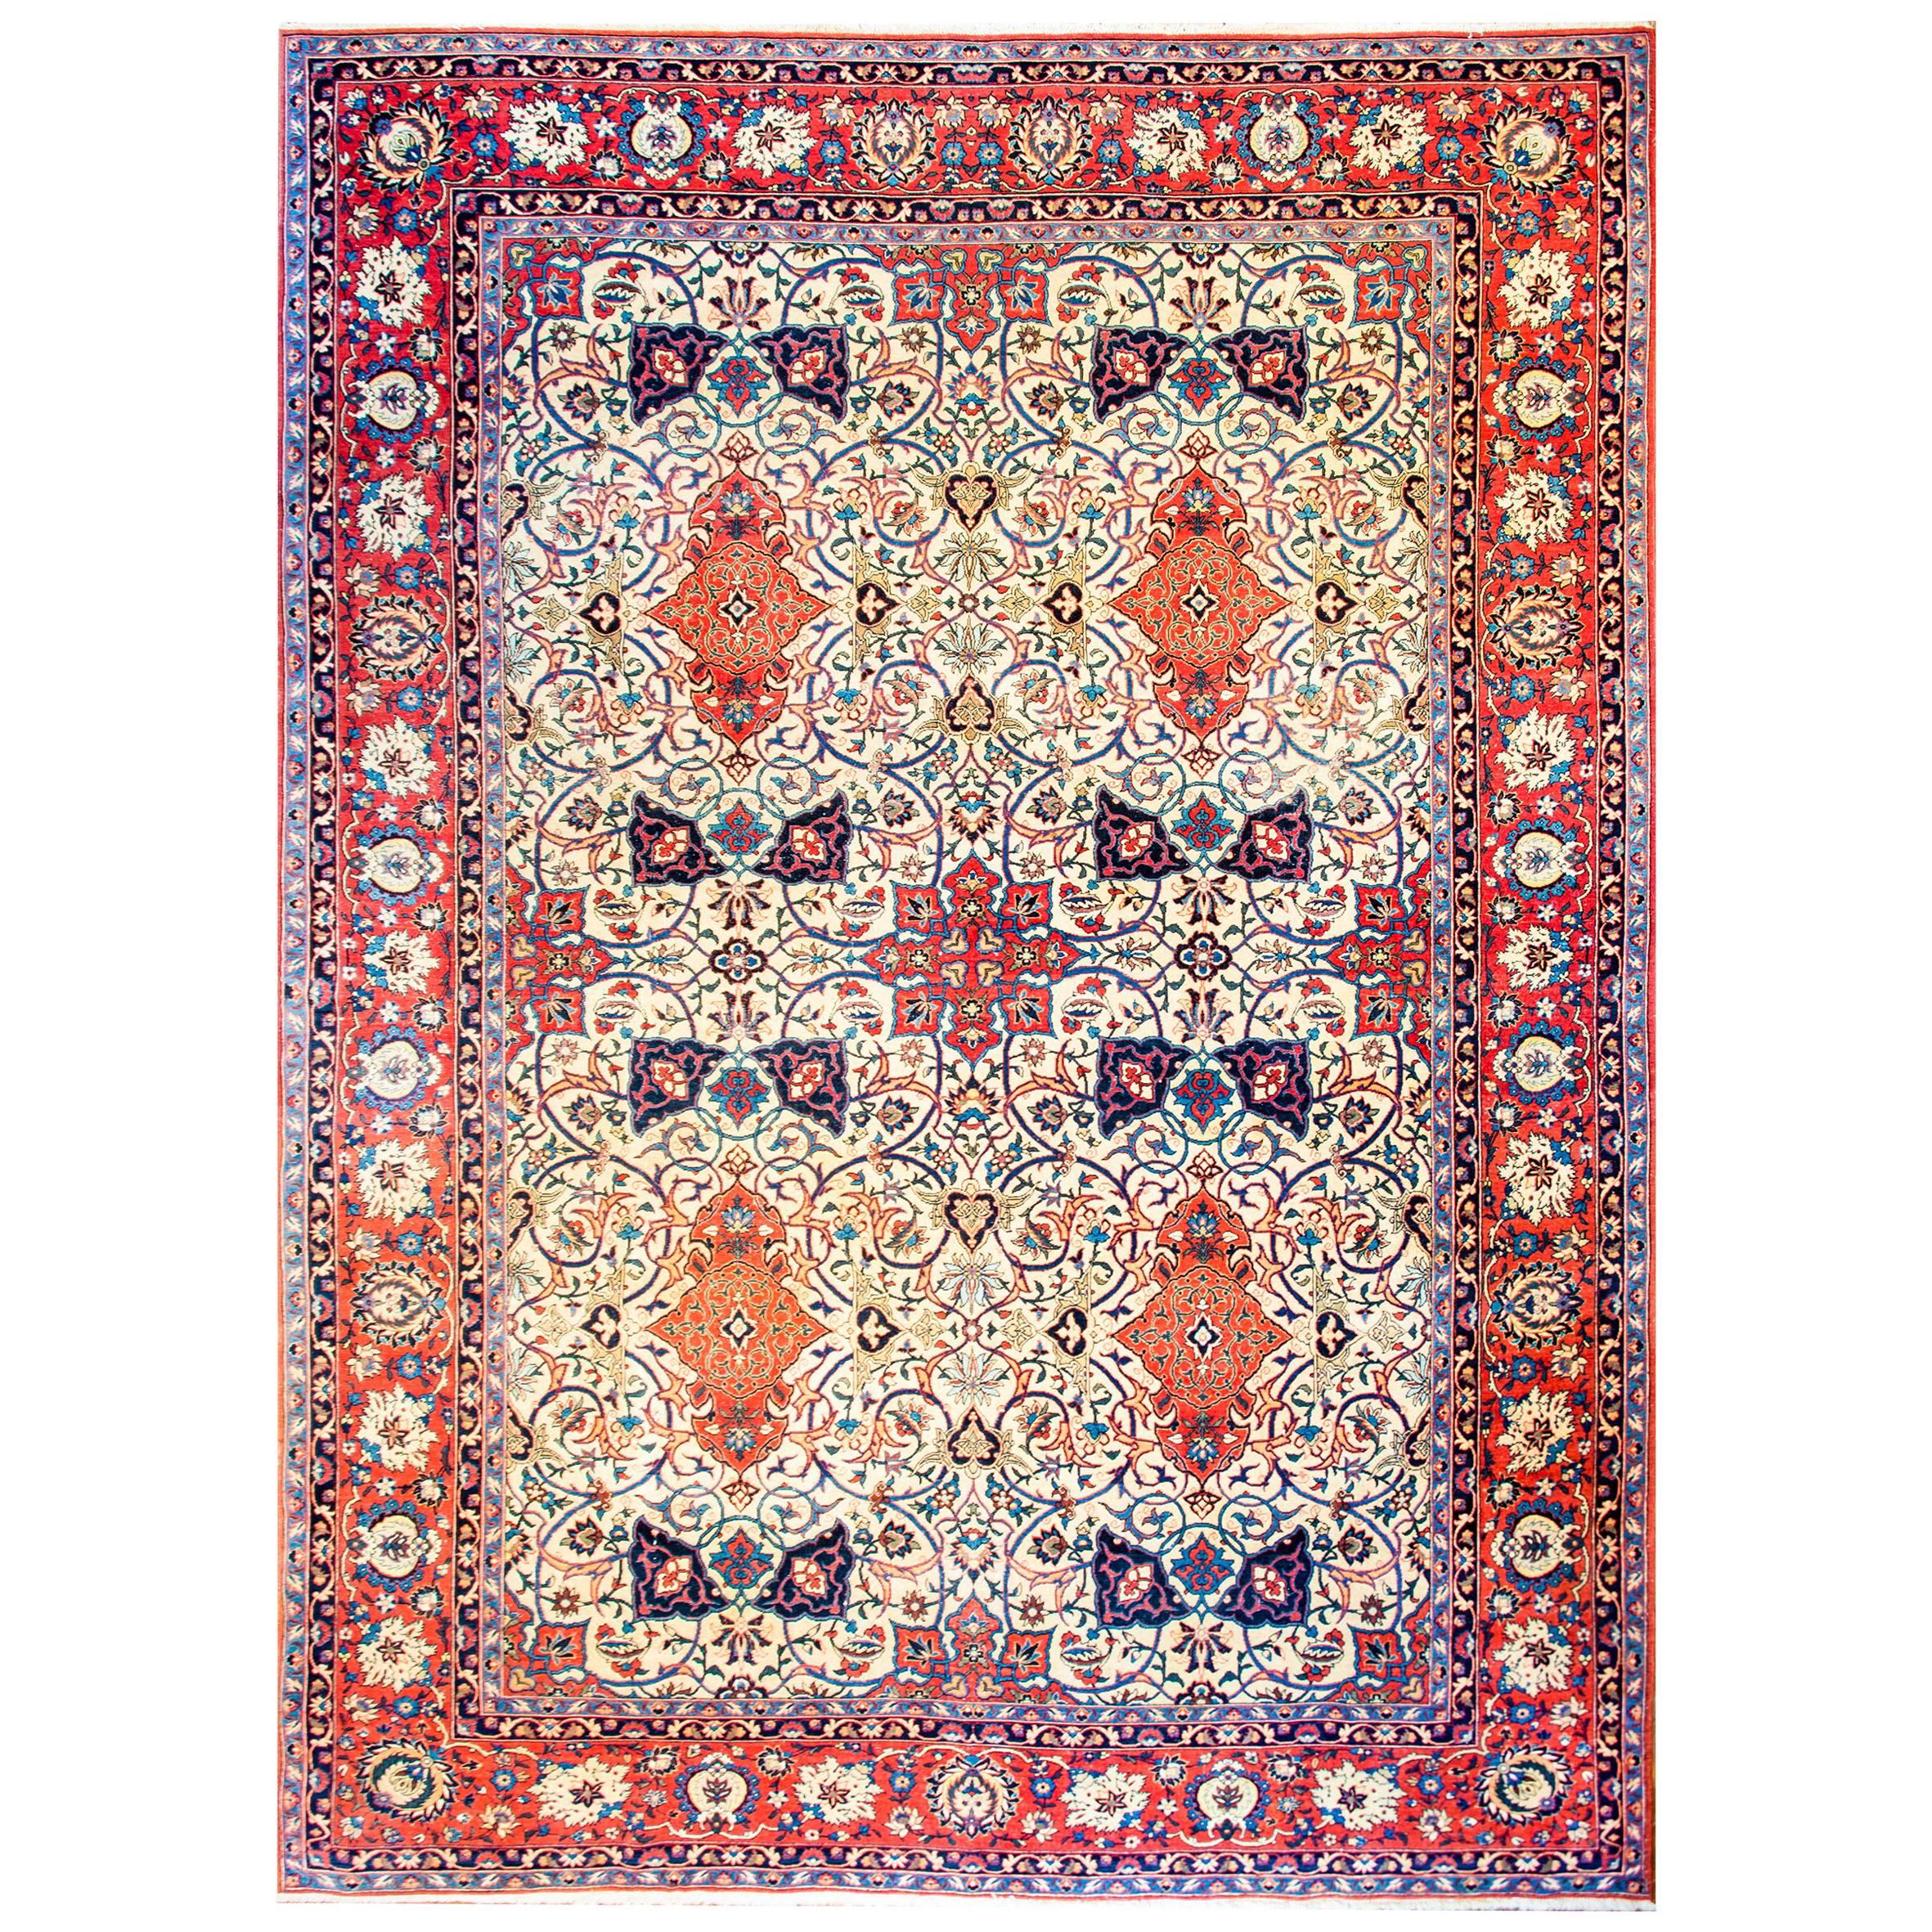 Persischer Isfahan-Teppich aus dem frühen 20. Jahrhundert, faszinierend